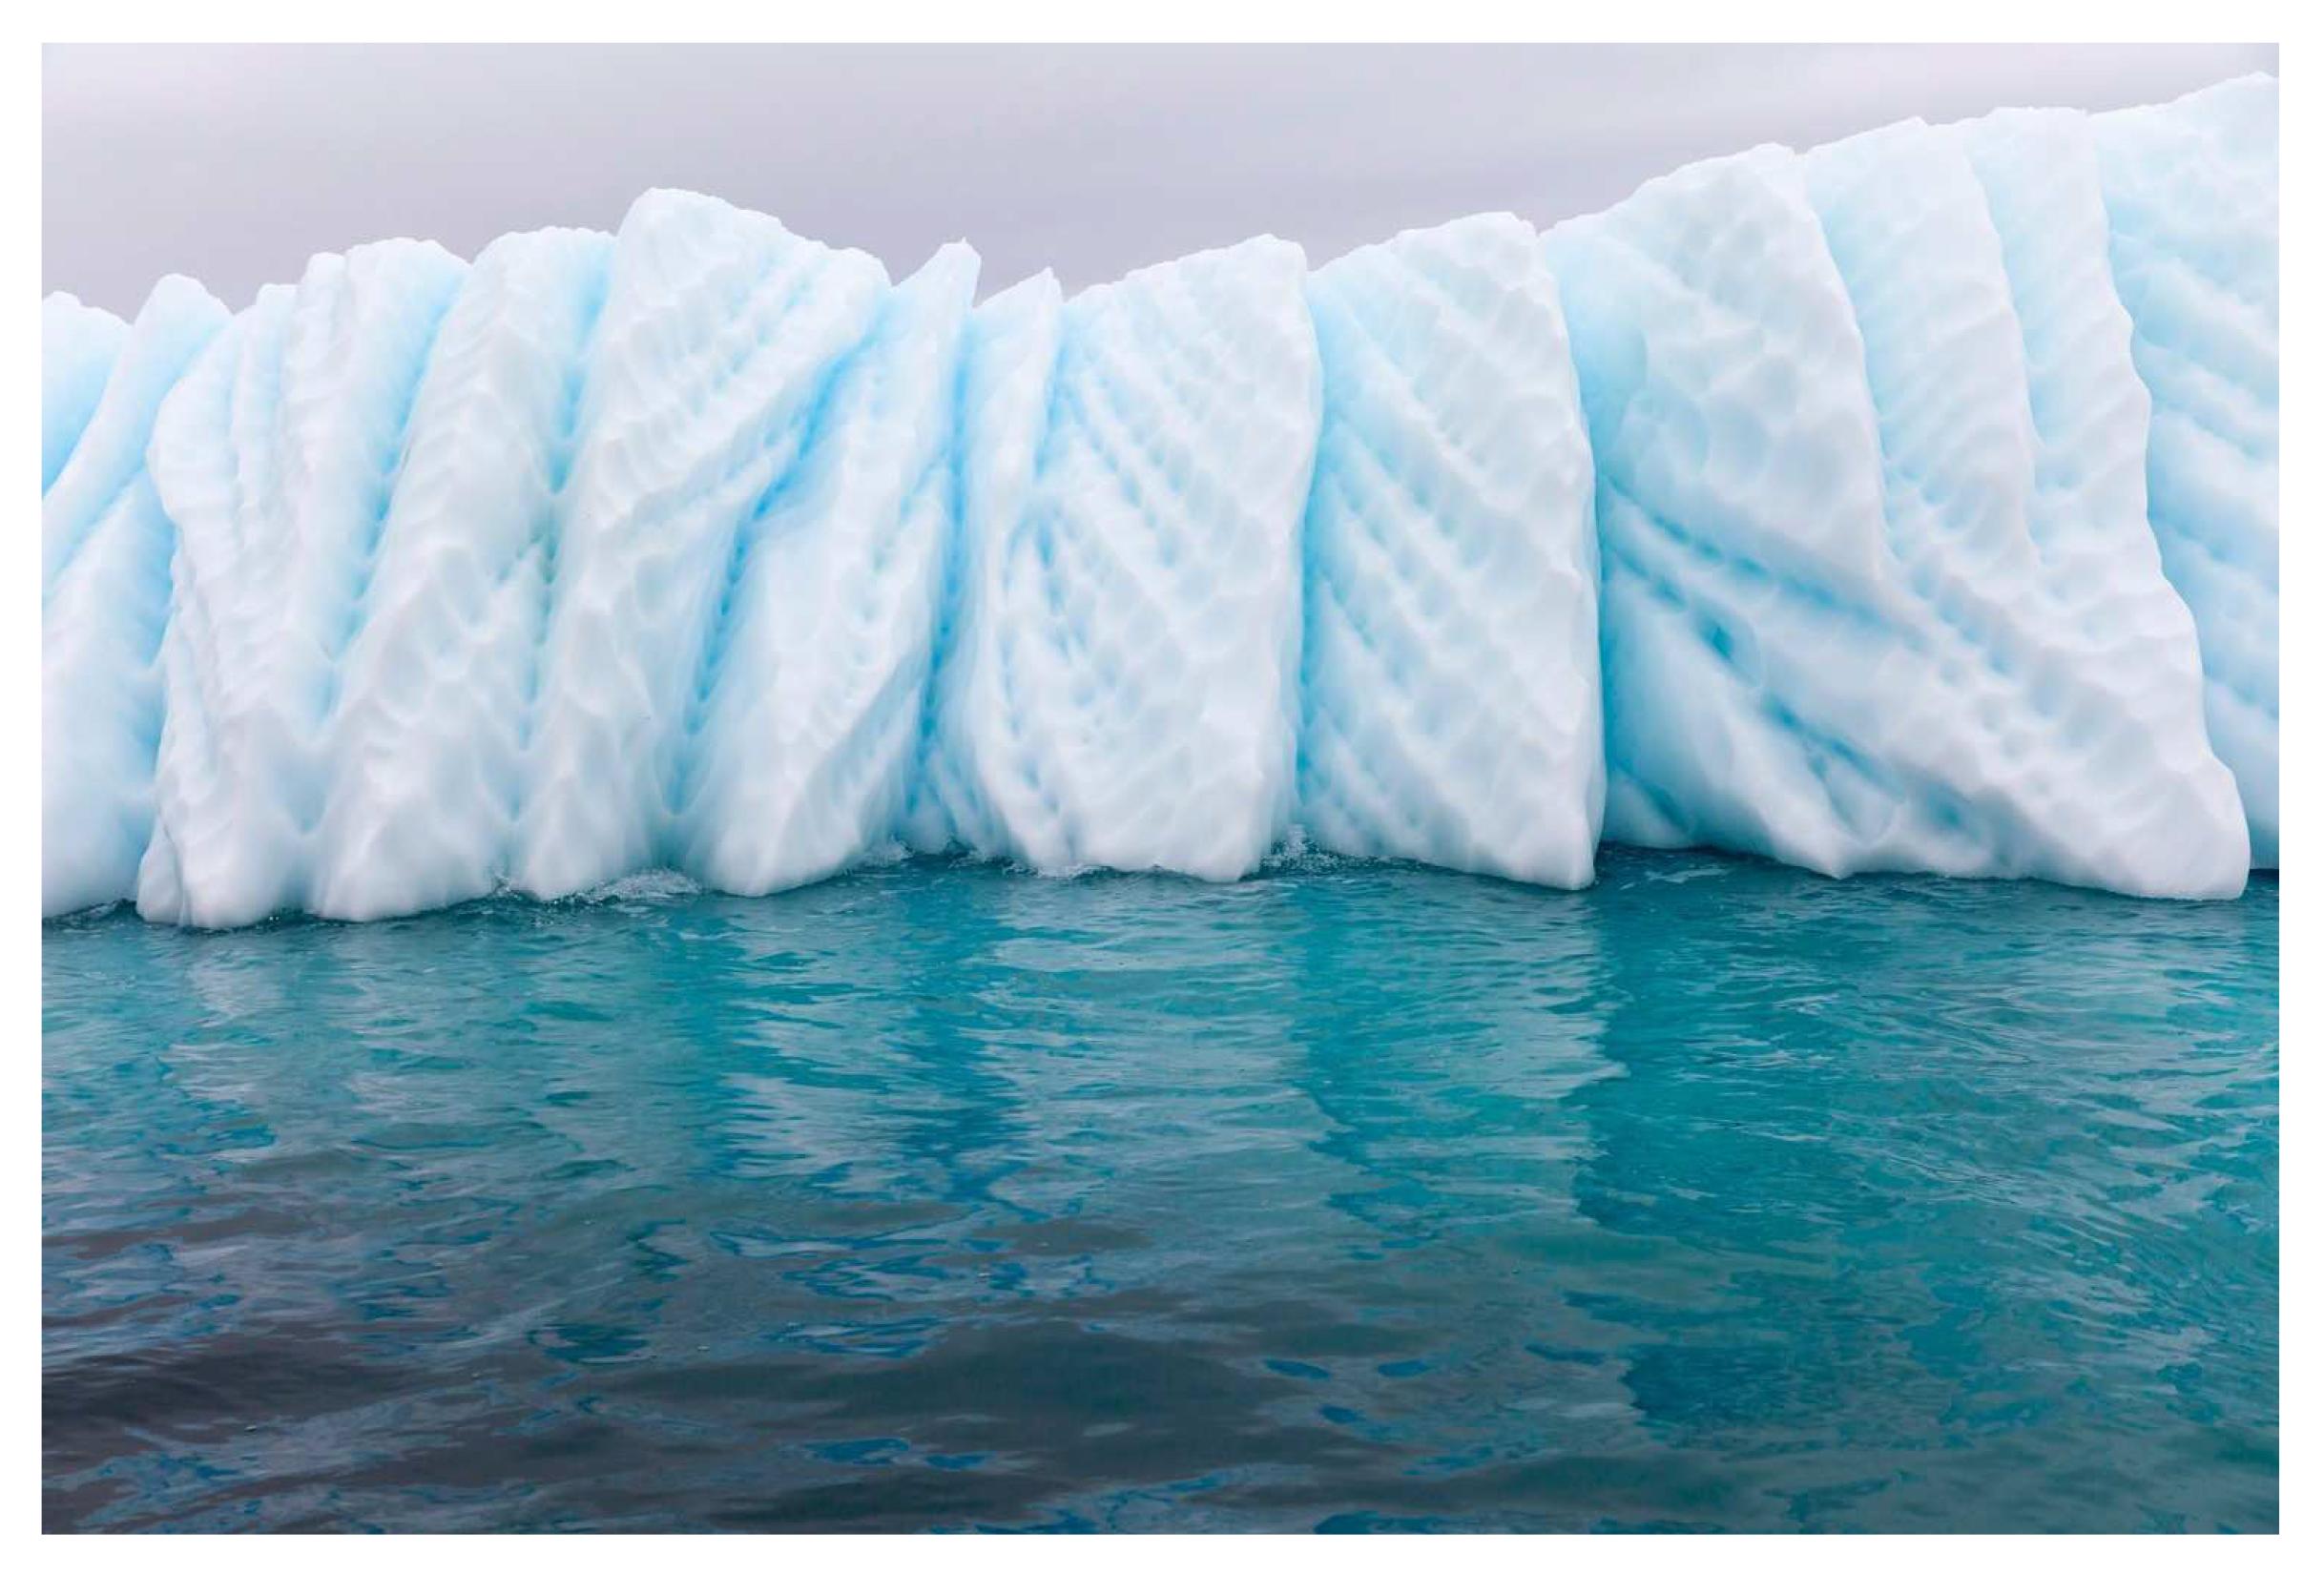 Bonnie Lautenberg Landscape Photograph - Fragile Elements 7, Antarctic icebergs landscape photograph 